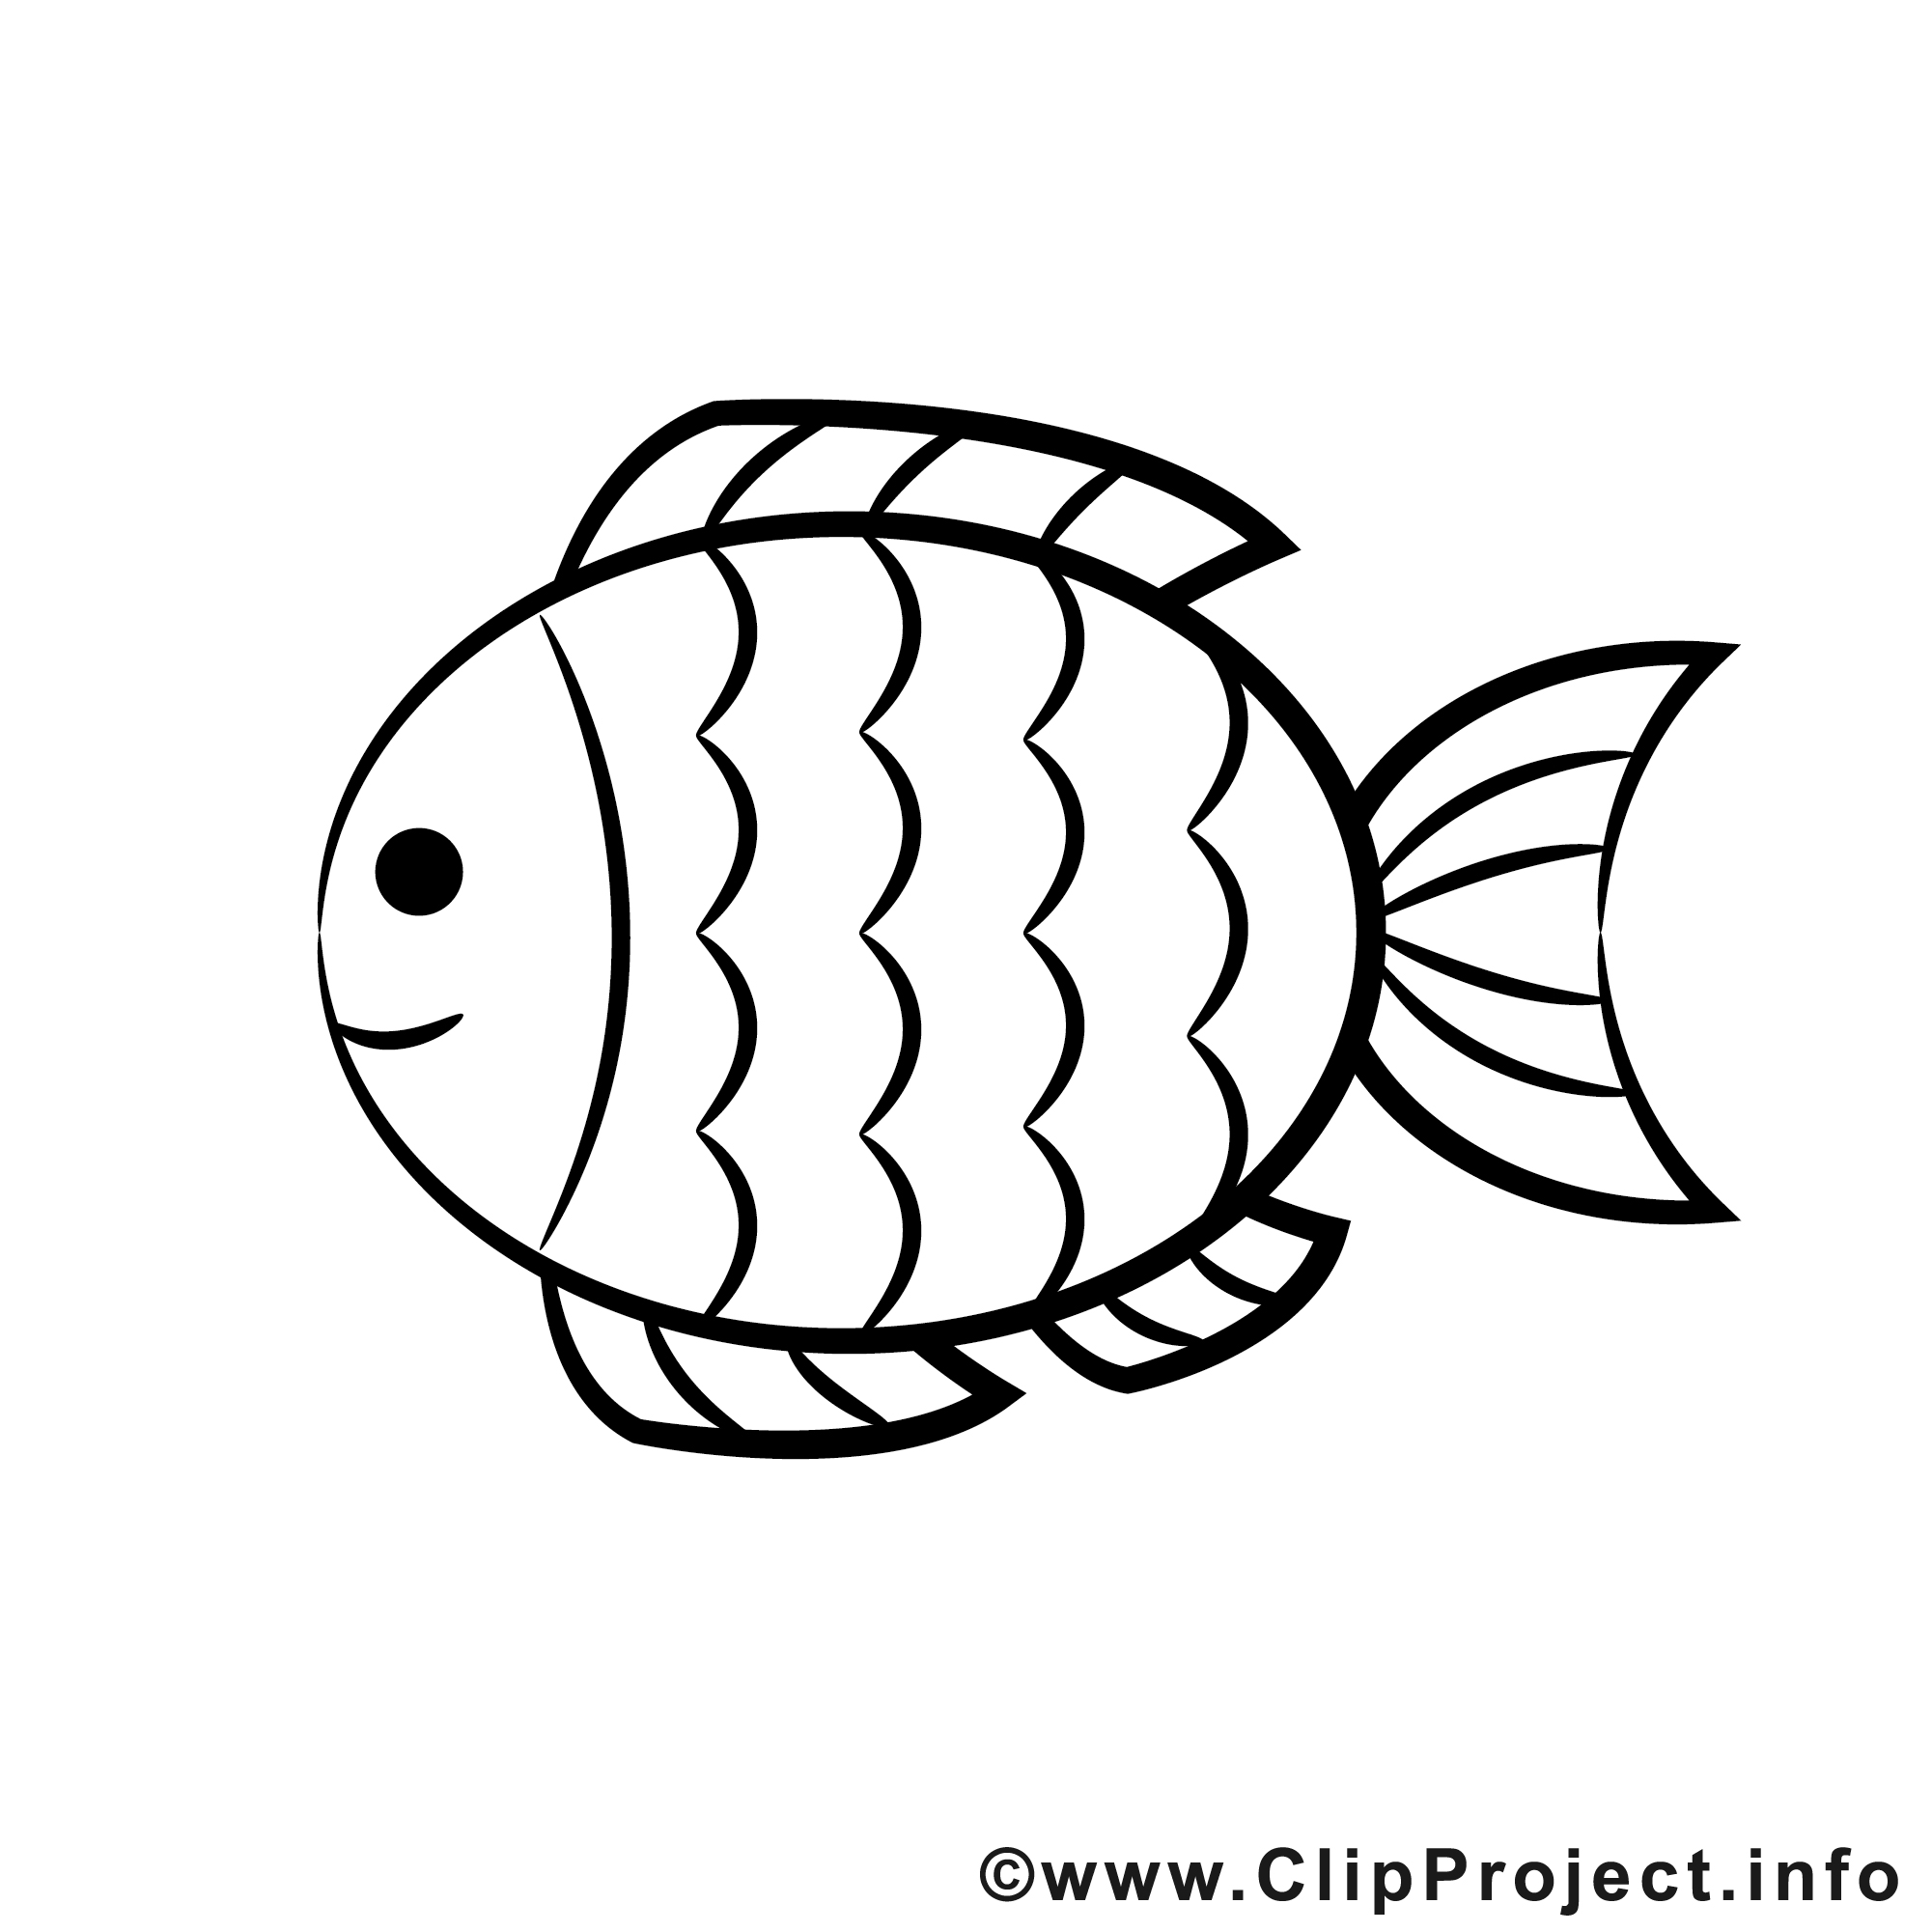 clipart gratuit poisson - photo #28